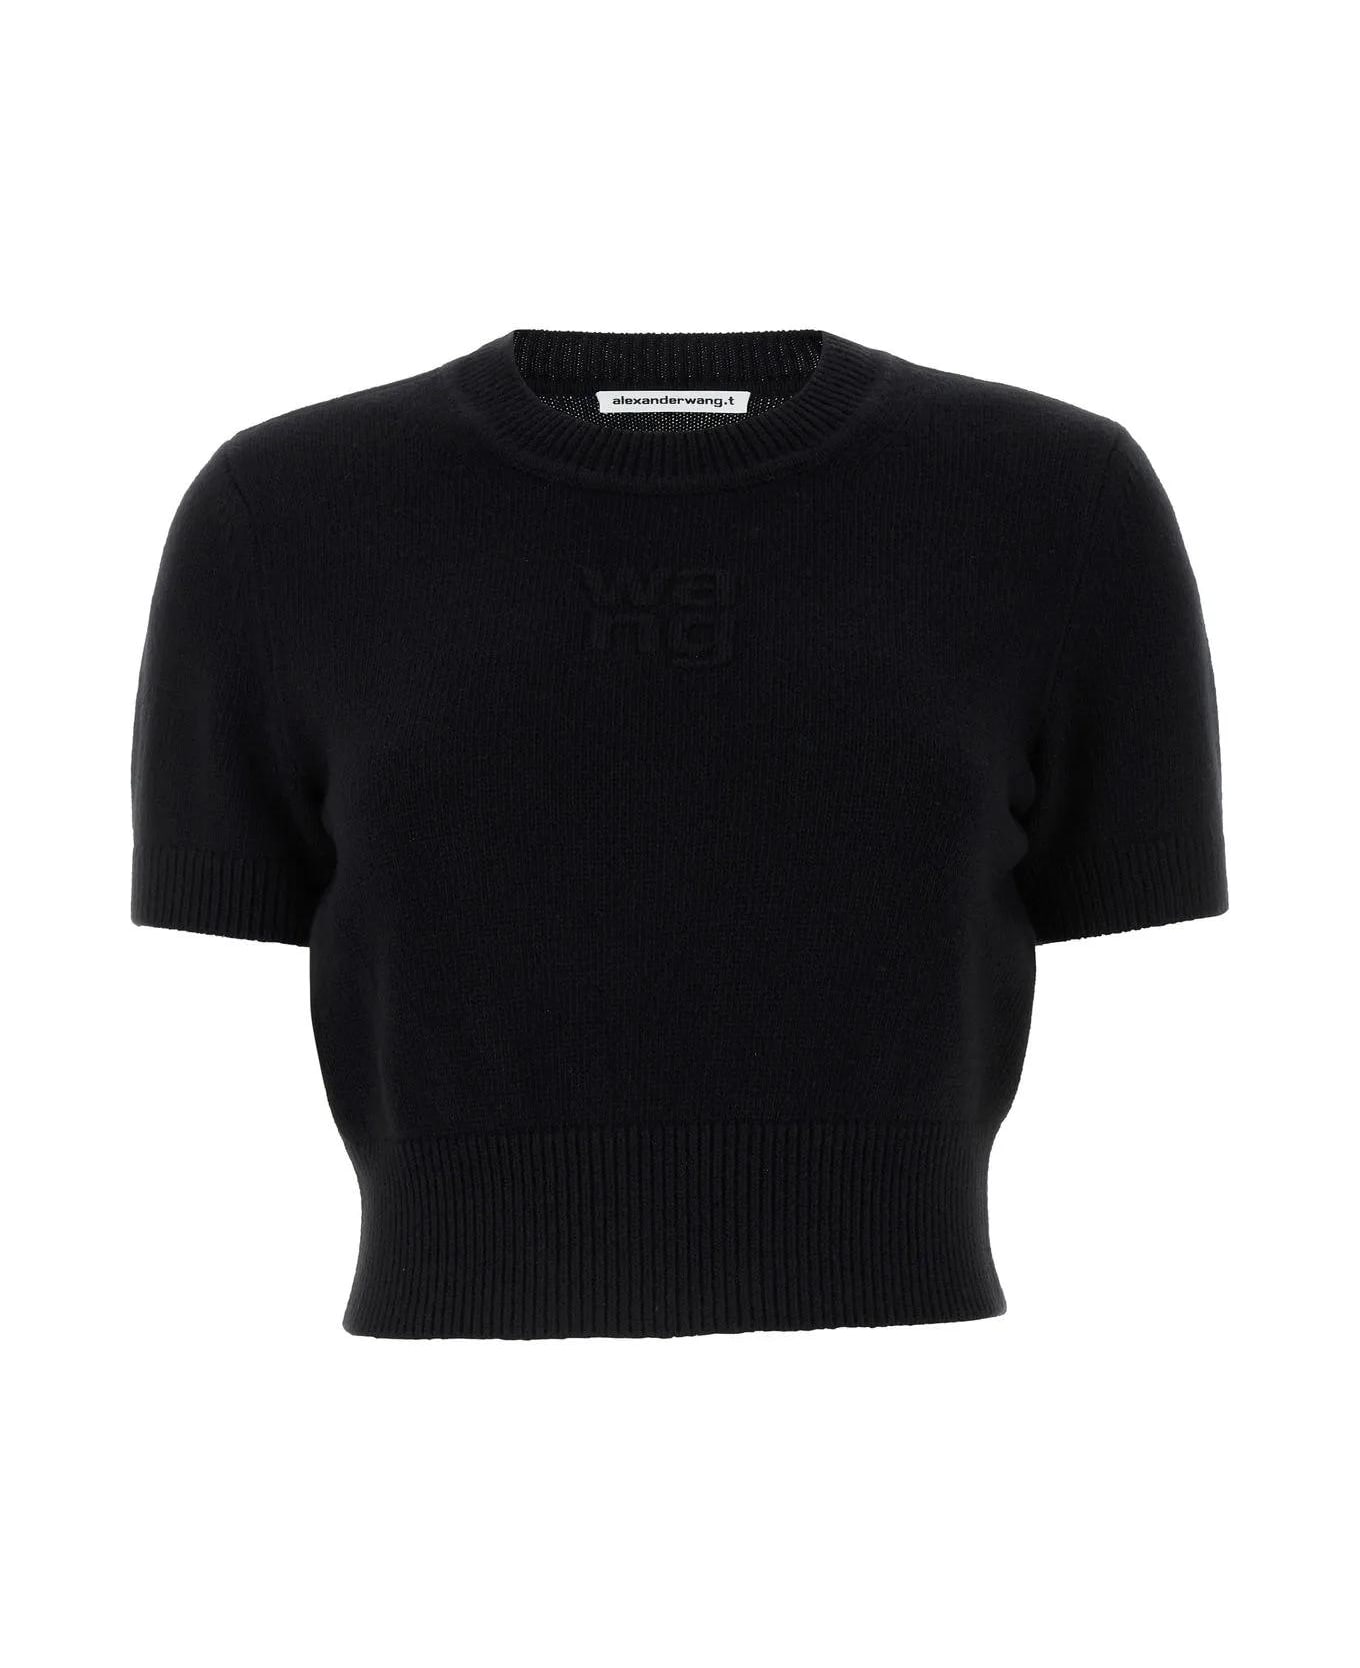 Alexander Wang Black Cotton Blend Sweater - Black